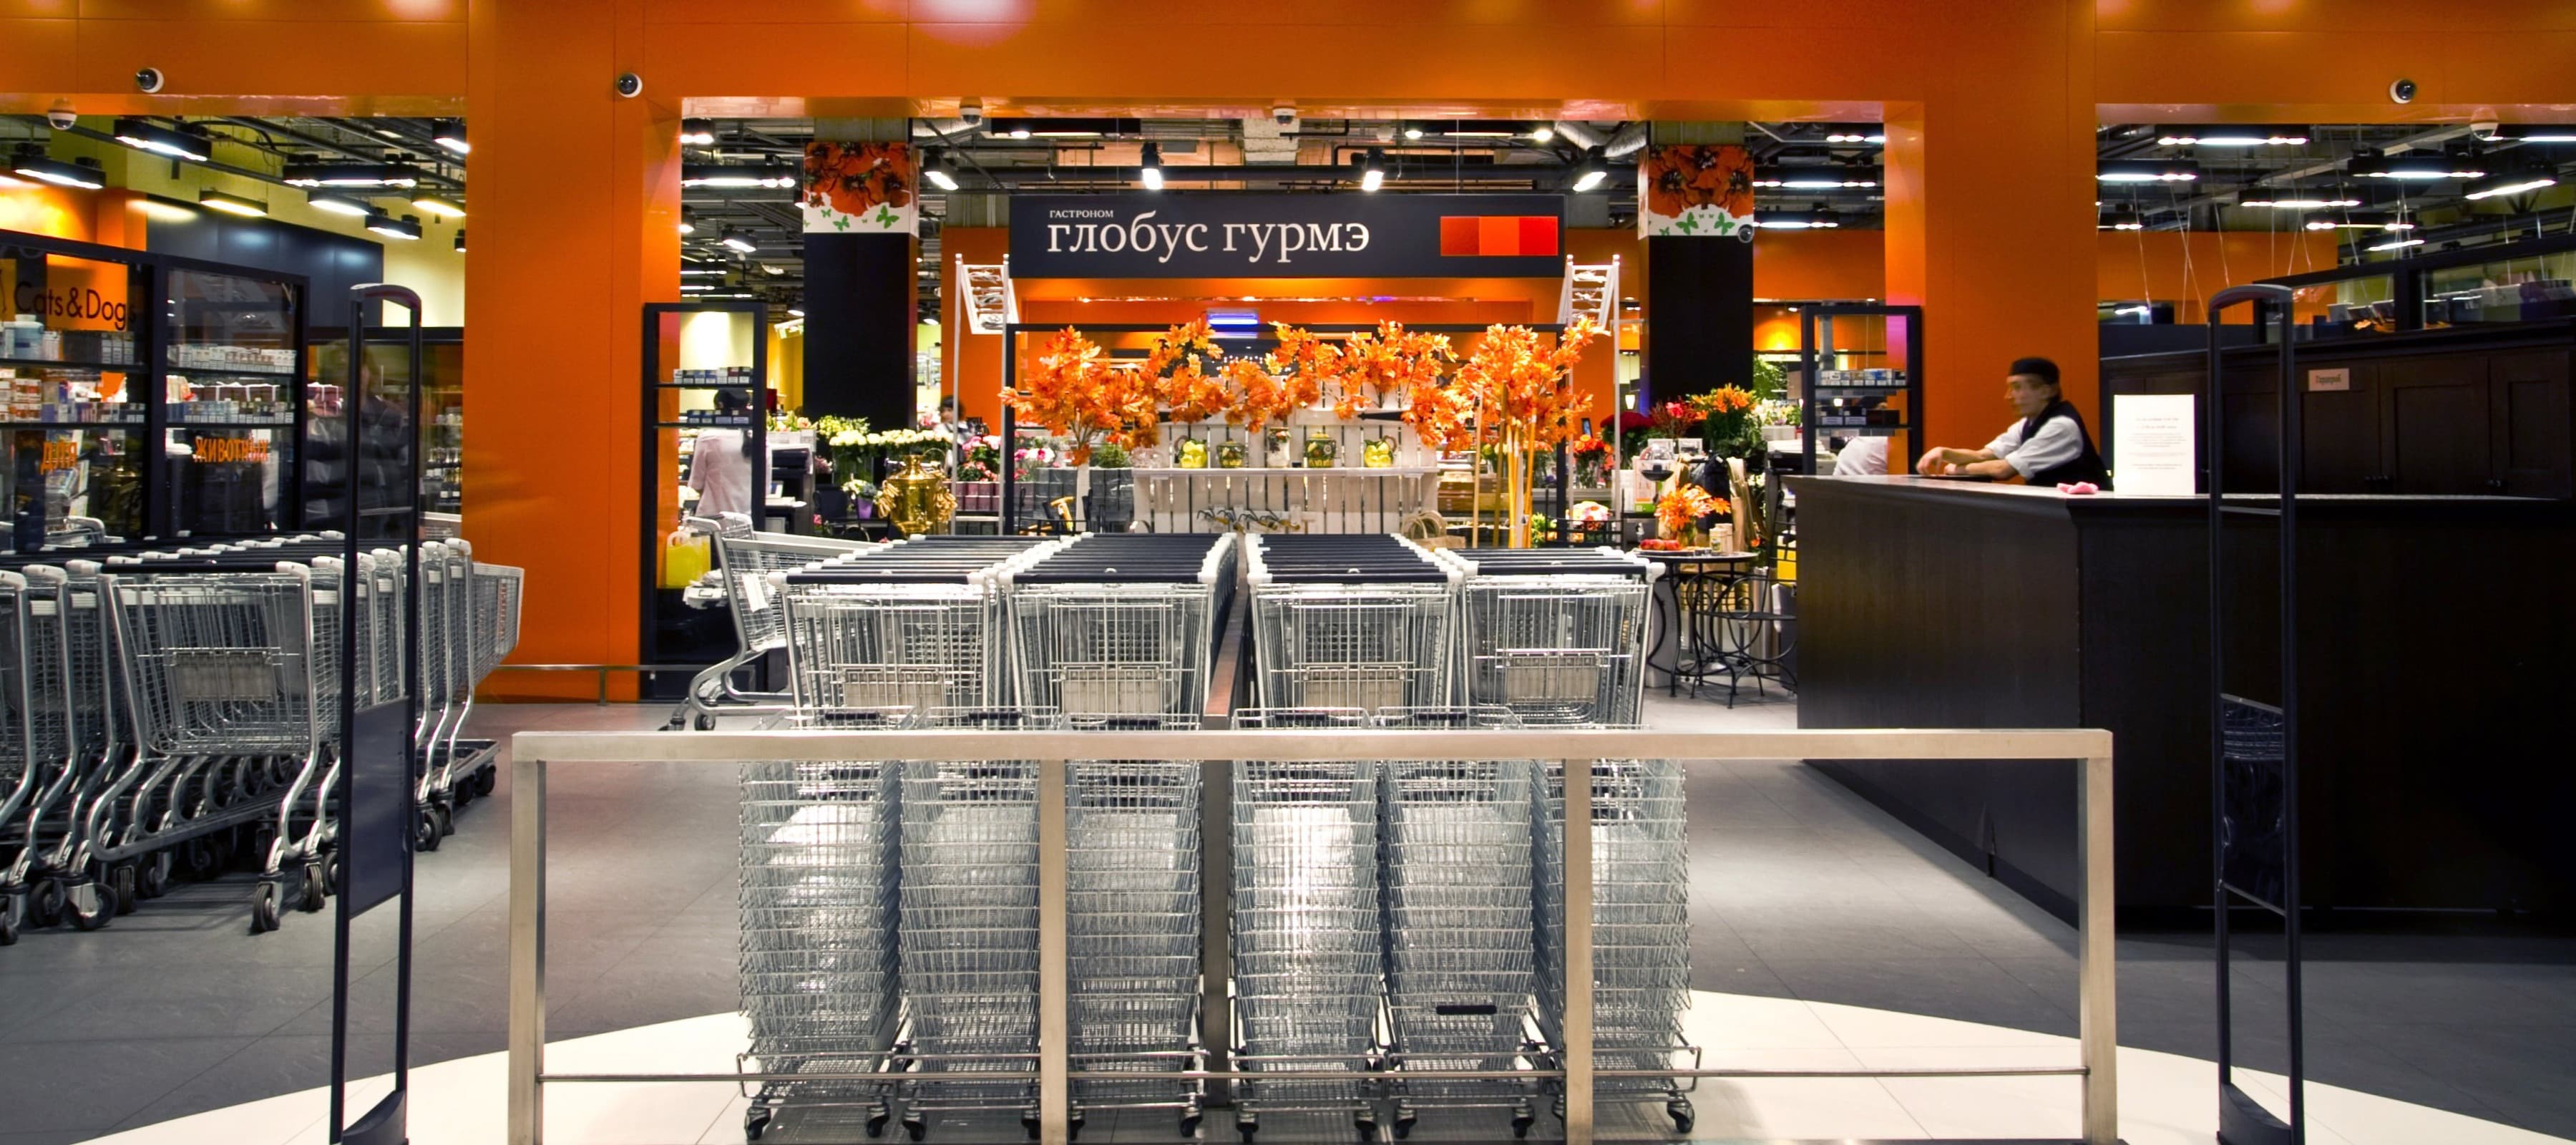 Фото новости: "Сенатор Каноков купил сеть премиум-супермаркетов «Глобус гурмэ»"